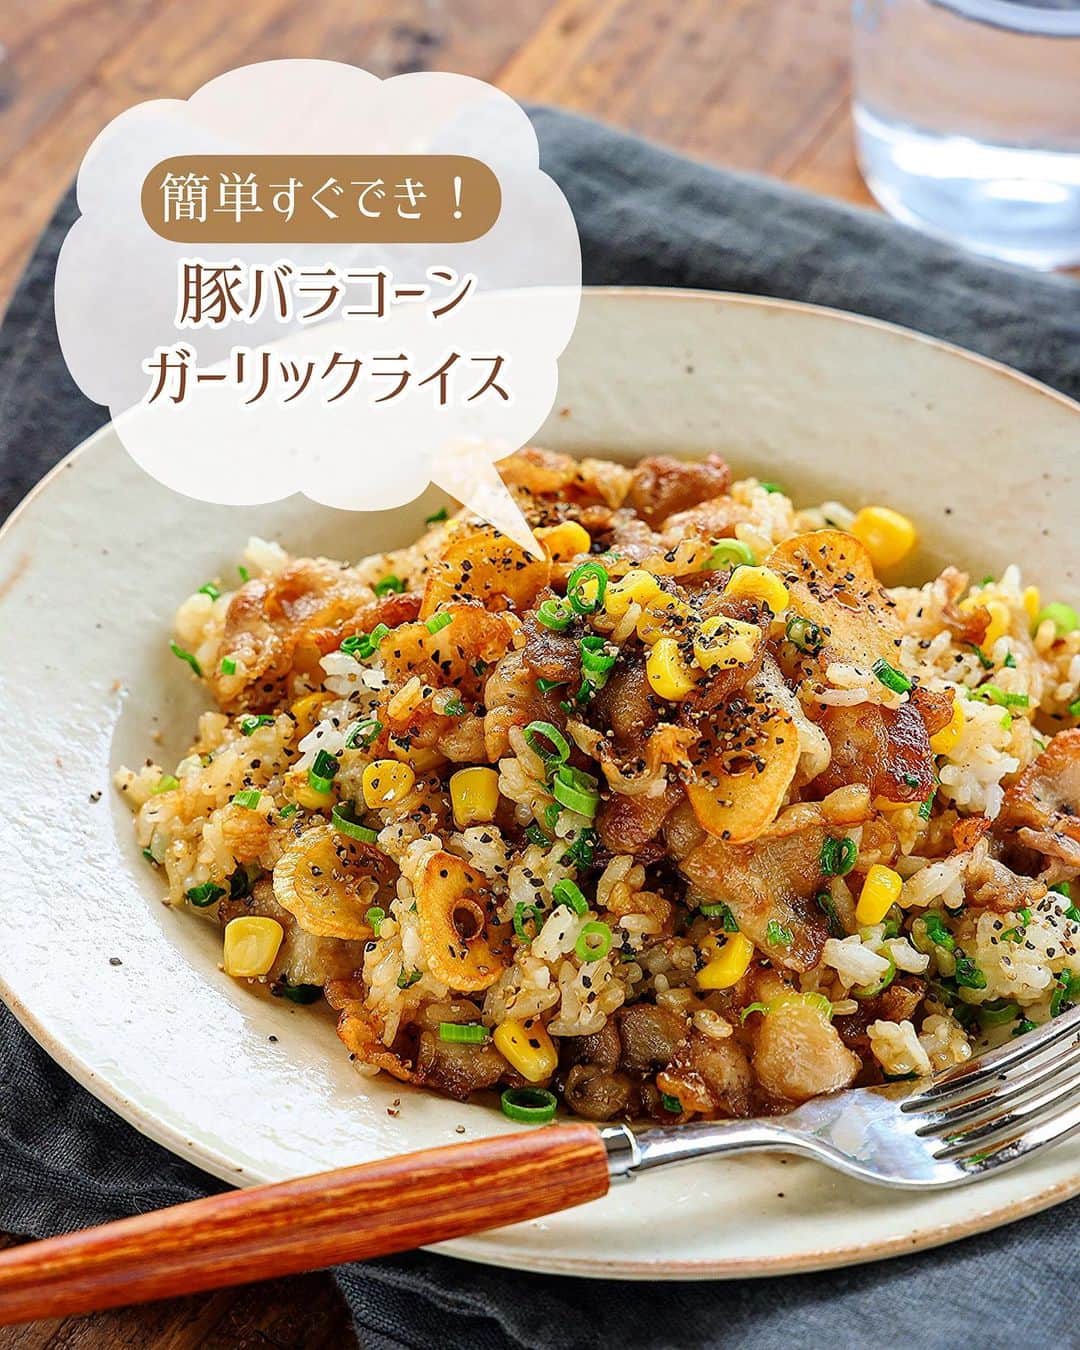 Mizuki【料理ブロガー・簡単レシピ】さんのインスタグラム写真 - (Mizuki【料理ブロガー・簡単レシピ】Instagram)「・連休ごはんにも🍳 ⁡ ［#レシピ ］ ーーーーーーーーーーーーーーーー 豚バラコーンのガーリックライス ーーーーーーーーーーーーーーーー ⁡ ⁡ ⁡ おはようございます☺️ ⁡ 今日ご紹介させていただくのは \ 豚バラコーンのガーリックライス / ⁡ フライパン1つですぐできて こどもも大人も好きな味💕 一皿で大満足の がっつりスタミナごはんです😋 ⁡ 連休ごはんにもおすすめなので よかったらお試しくださいね✨ ⁡ ⁡ ⁡ ＼ ＼ お知らせ ／／ #Mizukiオンライン料理教室 2期生の募集は本日まで📝 5月のレッスン(メニュー)は 『おうちで気軽に韓国ごはん🤭』 ⁡ ⁡ 【簡単・時短・節約レシピ更新中🔻】 @mizuki_31cafe ⁡ ⁡ ⁡ ＿＿＿＿＿＿＿＿＿＿＿＿＿＿＿＿＿＿＿ 【2人分】 豚バラ薄切り肉...150g にんにく...1かけ コーン...大5〜6 万能ねぎ...4本 温かいごはん...300g サラダ油...大1 ●焼肉のたれ...大1 ●塩・コンソメ...各小1/4 ●バター...10g 粗挽き黒こしょう...少々 ⁡ 1.豚肉は3cm幅に切る。にんにくは薄切り、ねぎは小口切りにする。 2.フライパンにサラダ油とにんにくを入れて中火にかけ、にんにくが色付いたら取り出す。 3.そのままのフライパンで豚肉を炒め、火が通ったらコーンも加えてさっと炒める。ごはんを加えてほぐしながら炒め、●を加えて味付けする。 4.仕上げにねぎを加えてひと混ぜし、器に盛り、にんにくと黒こしょうをトッピングする。 ￣￣￣￣￣￣￣￣￣￣￣￣￣￣￣￣￣￣￣ ⁡ ⁡ 《ポイント》 ♦︎ごはんは温かいものを使用して下さい♩ ♦︎豚肉は焼き色が付くまで炒めると香ばしさがアップします♩ ♦︎コーンやねぎの量はお好みでOKです♩ ⁡ ⁡ ⁡ ⁡ ⁡ 𖤣𖥧𖥣𖡡𖥧𖤣✨ 愛用している調理器具や器などは #楽天ROOMに載せてます ‎𐩢𐩺 (ハイライトから飛べます🛍) ⁡ ⁡ ⁡ ⁡ ⁡ 🔶全国の書店・ネット書店で発売中🔶 ⁡ ✼••┈┈┈┈┈••✼••┈┈┈┈┈••✼ 今日のごはんこれに決まり！ ‎𓊆#Mizukiのレシピノート 500品𓊇 ✼••┈┈┈┈┈••✼••┈┈┈┈┈••✼ ⁡ ˗ˏˋ おかげさまで23万部突破 ˎˊ˗ 料理レシピ本大賞準大賞を受賞しました🙇‍♀️ ⁡ 6000点の中からレシピを厳選し まさかの【500レシピ掲載】❣️ 肉や魚のメインおかずはもちろん 副菜、丼、麺、スープ、お菓子 ハレの日のレシピ、鍋のレシピまで 全てこの一冊で完結𓌉◯𓇋✨ ⁡ ⁡ ⁡ ✼••┈┈┈••✼••┈┈┈••✼ Mizukiのカンタン手作り   𓊆 #3時のおやつ 𓊇 ✼••┈┈┈••✼••┈┈┈••✼ ⁡ 『3分クッキング』で連載中の 「Mizukiのカンタン手作り」 ‎4年分のおやつが1冊になりました！ ❝オーブンなしで❞ 身近な材料と道具でできる 簡単、手軽なおやつを80品🍪 ⁡ ⁡ ⁡ ⁡ ⁡ #豚バラコーンガーリックライスm #ガーリックライス #豚肉 #豚肉レシピ #ランチ #炒飯 #ピラフ #丼 #節約料理 #簡単料理  #時短料理 #料理 #mizukiレシピ  #アルモンデ #時短レシピ #節約レシピ #簡単レシピ」4月30日 7時03分 - mizuki_31cafe